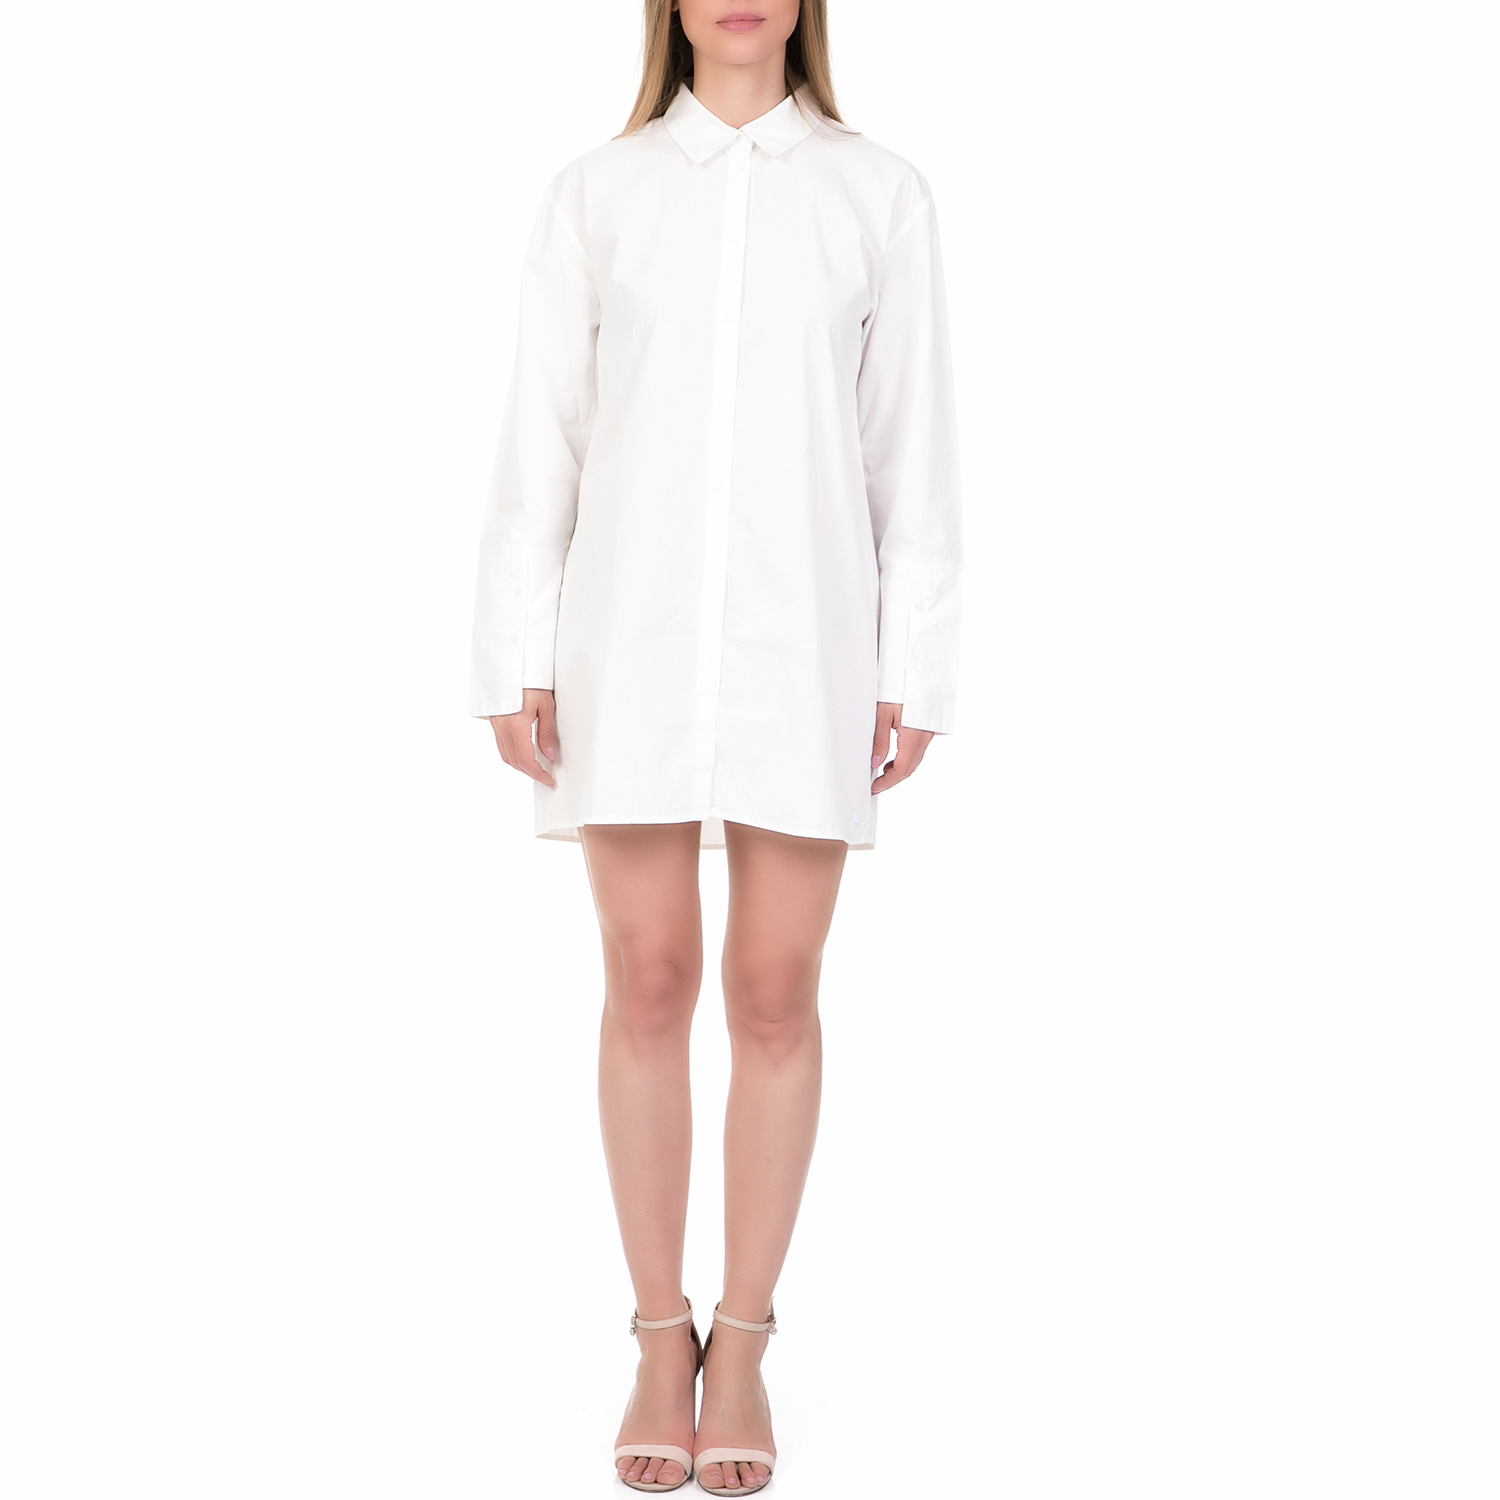 Γυναικεία/Ρούχα/Φορέματα/Μίνι FUNKY BUDDHA - Γυναικείο φόρεμα FUNKY BUDDHA λευκό